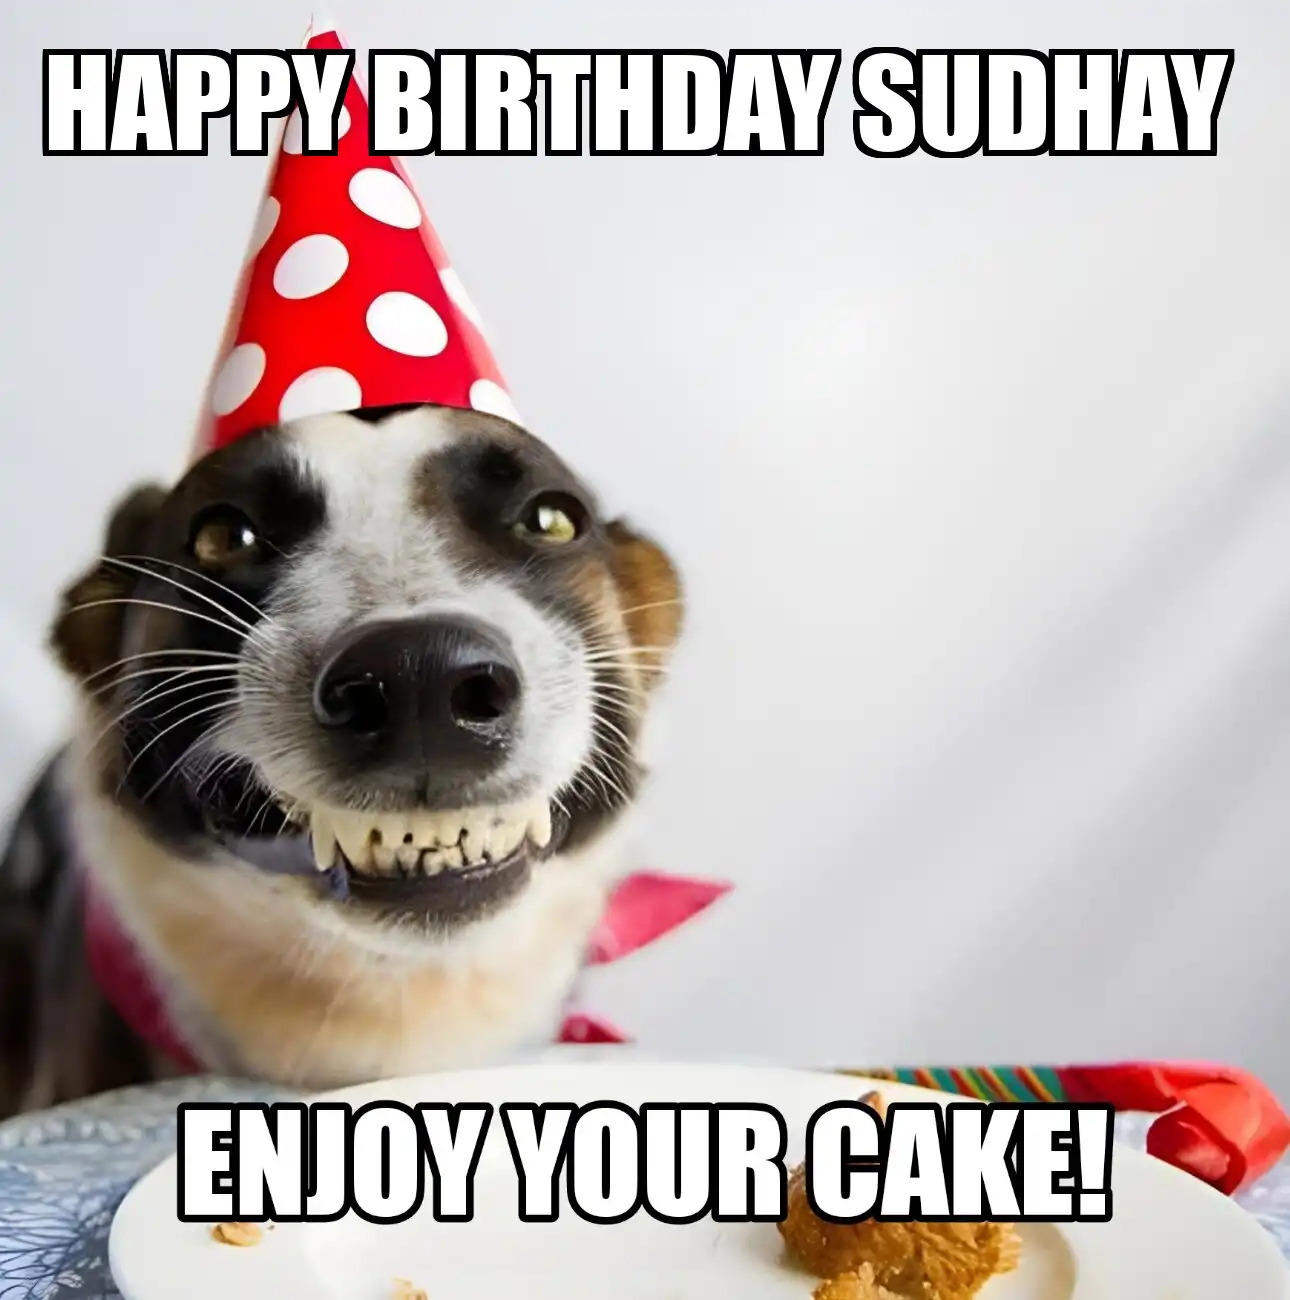 Happy Birthday Sudhay Enjoy Your Cake Dog Meme